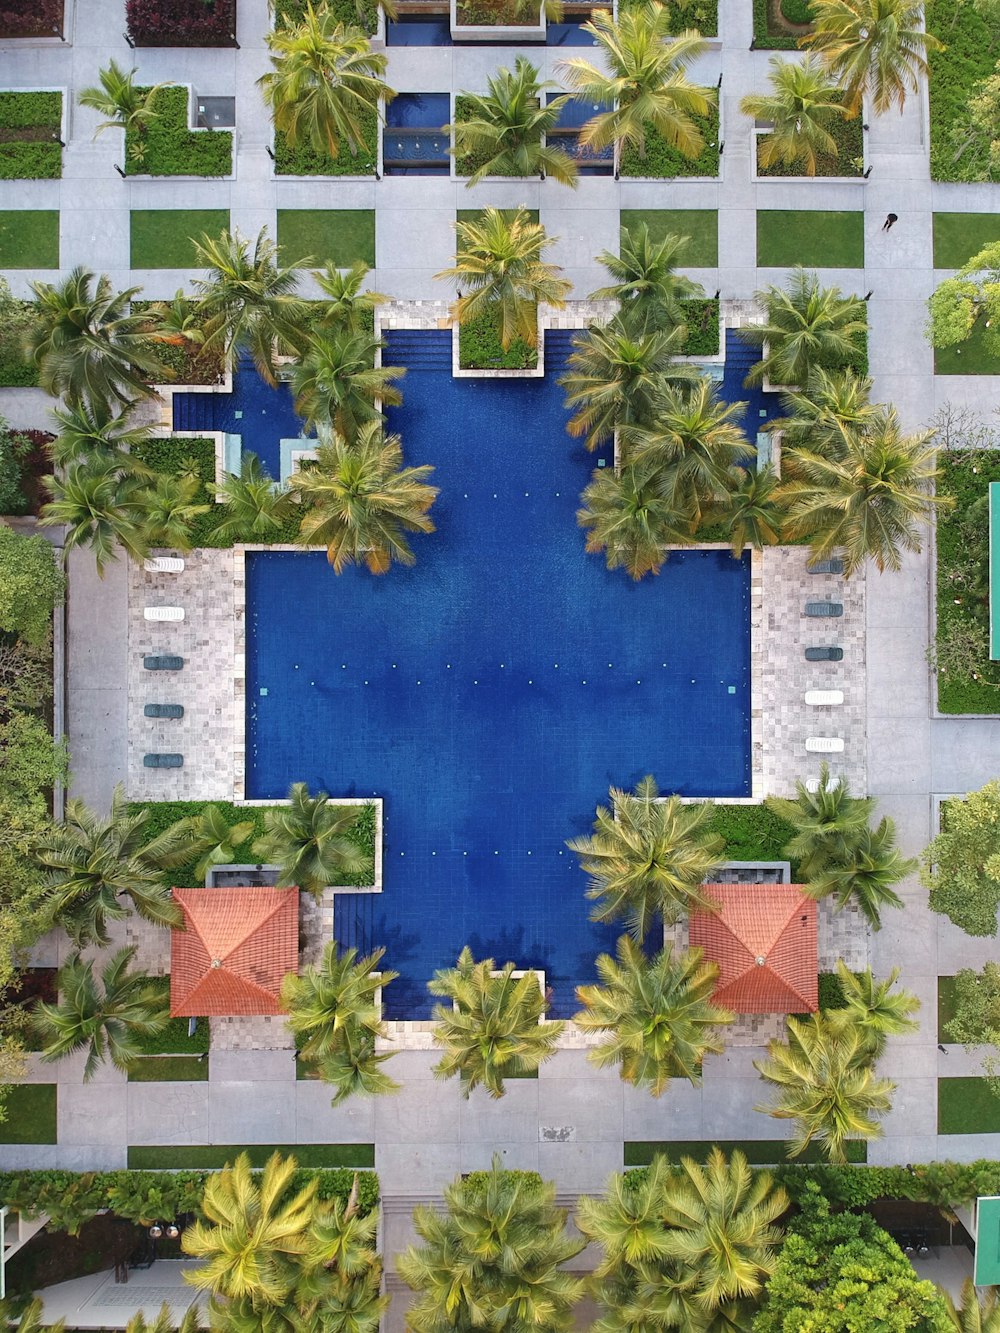 veduta aerea della piscina circondata da palme